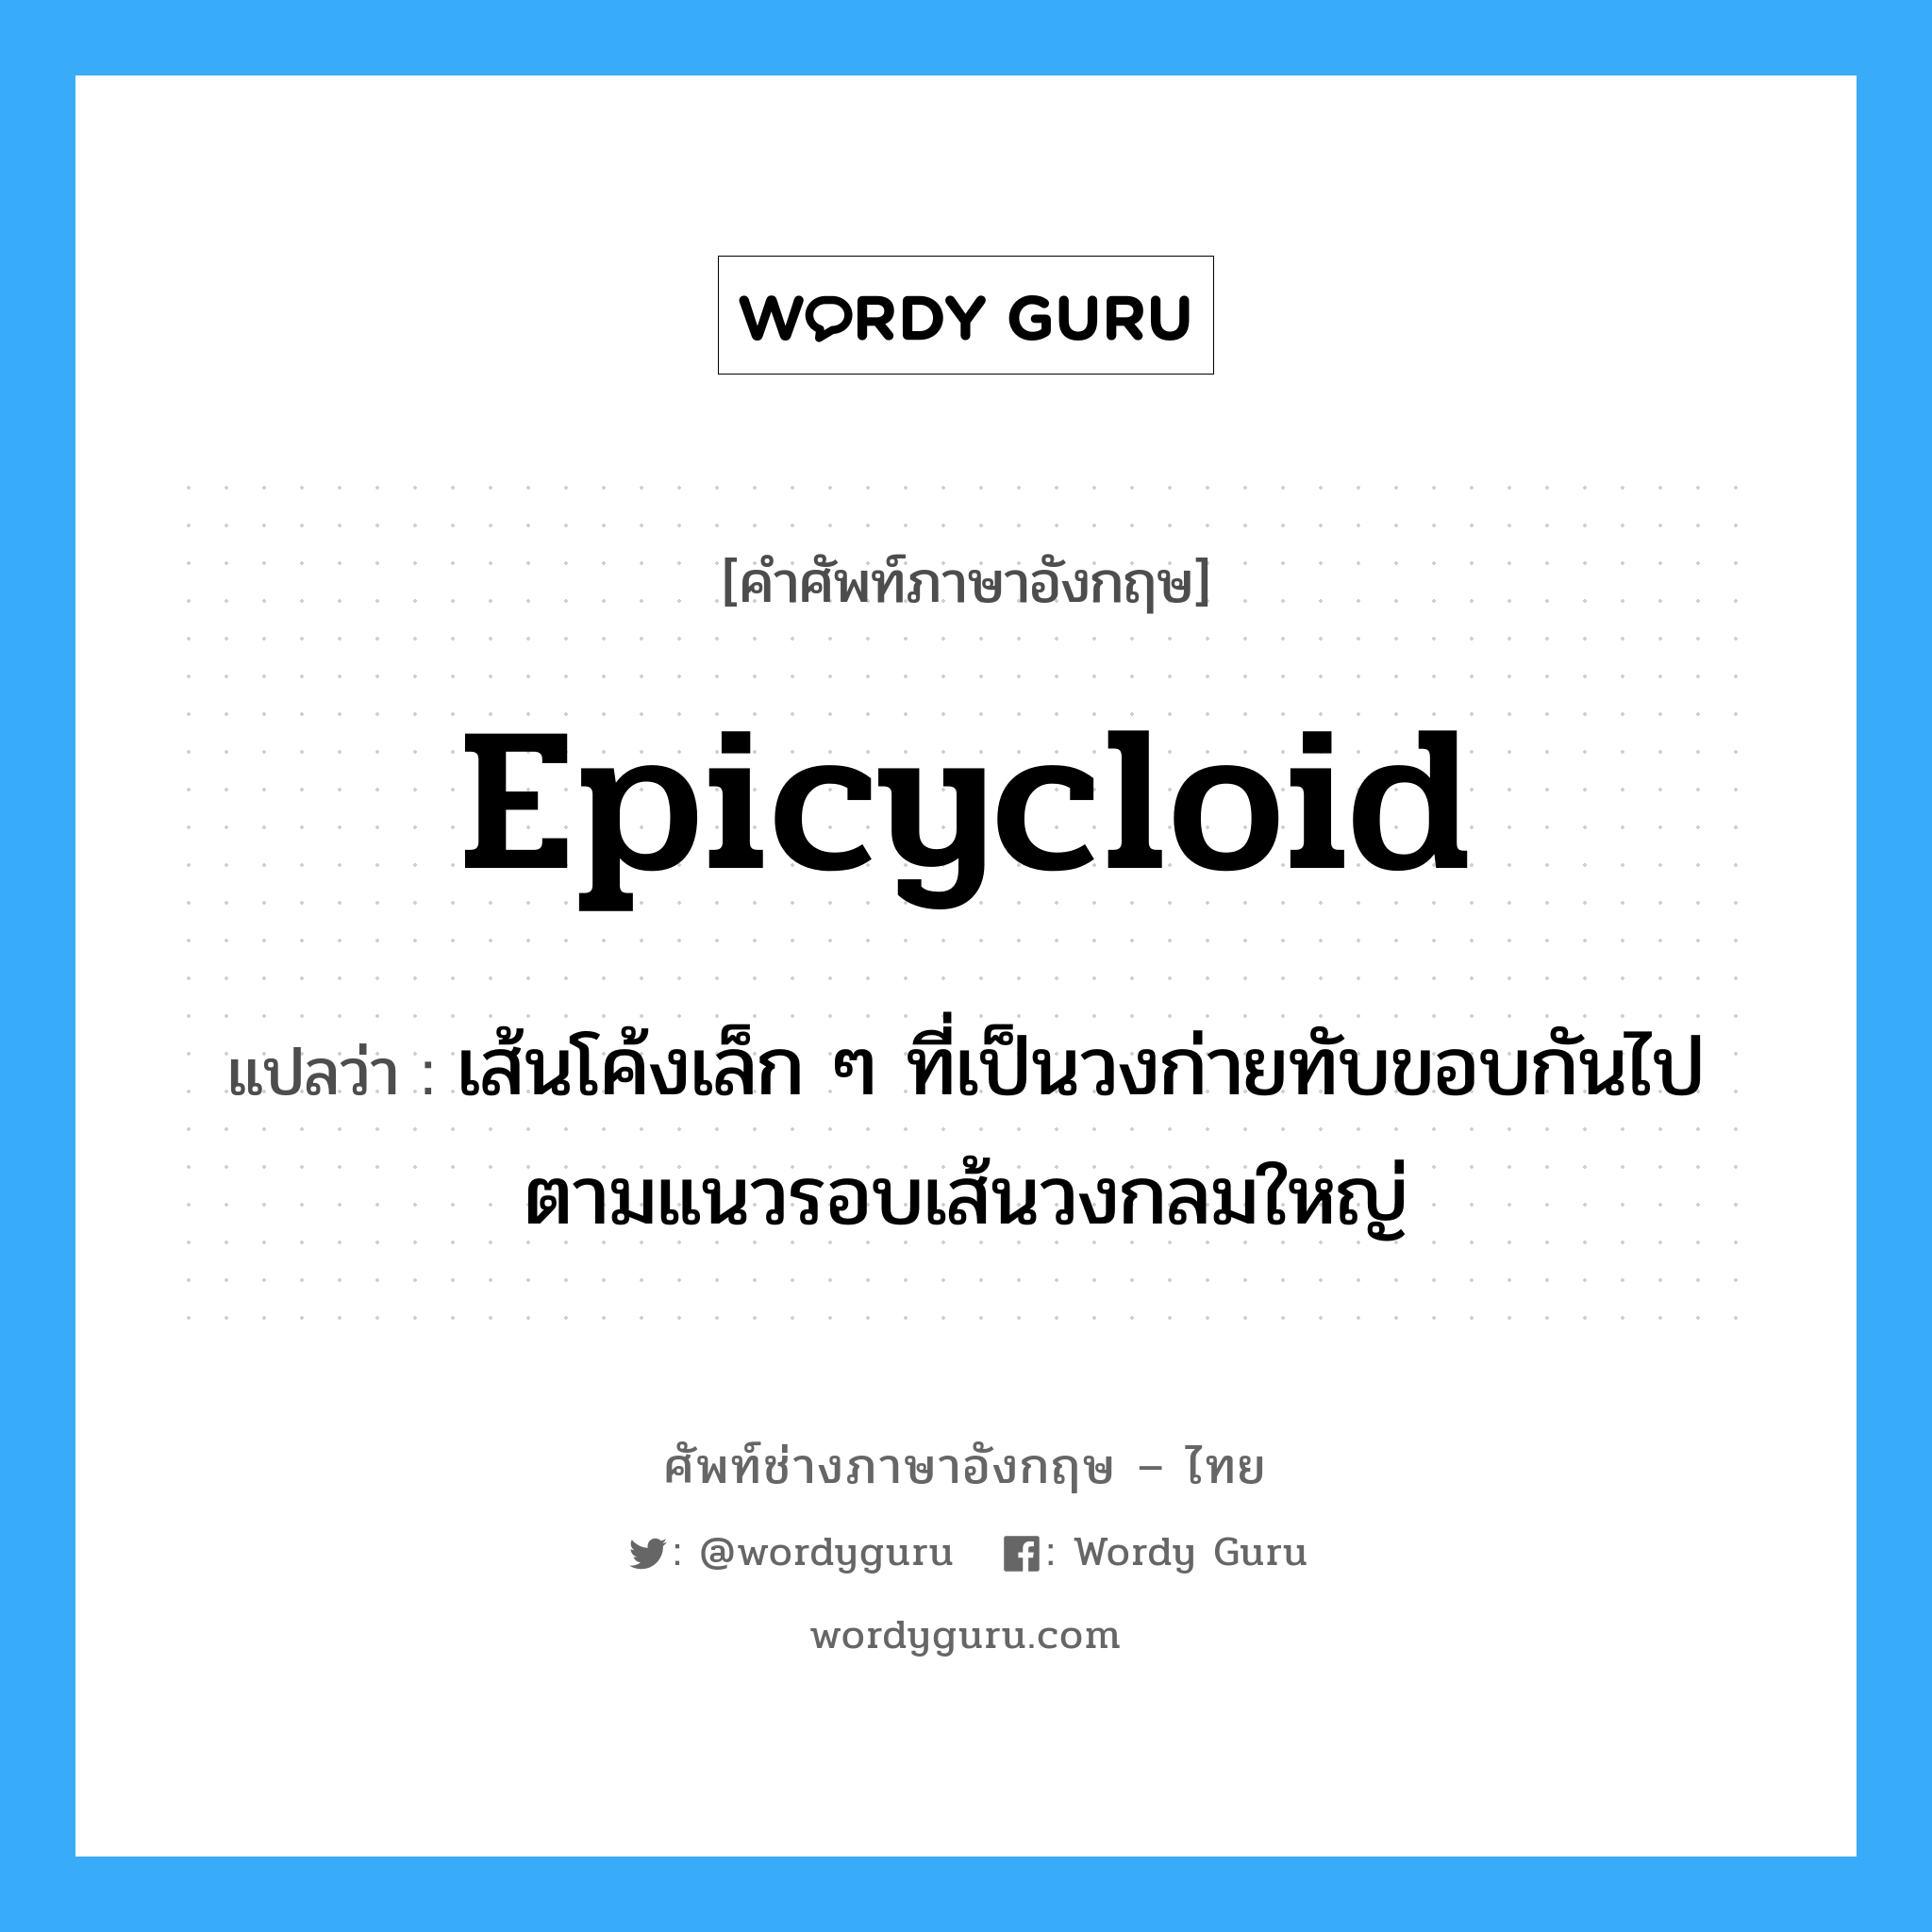 epicycloid แปลว่า?, คำศัพท์ช่างภาษาอังกฤษ - ไทย epicycloid คำศัพท์ภาษาอังกฤษ epicycloid แปลว่า เส้นโค้งเล็ก ๆ ที่เป็นวงก่ายทับขอบกันไปตามแนวรอบเส้นวงกลมใหญ่